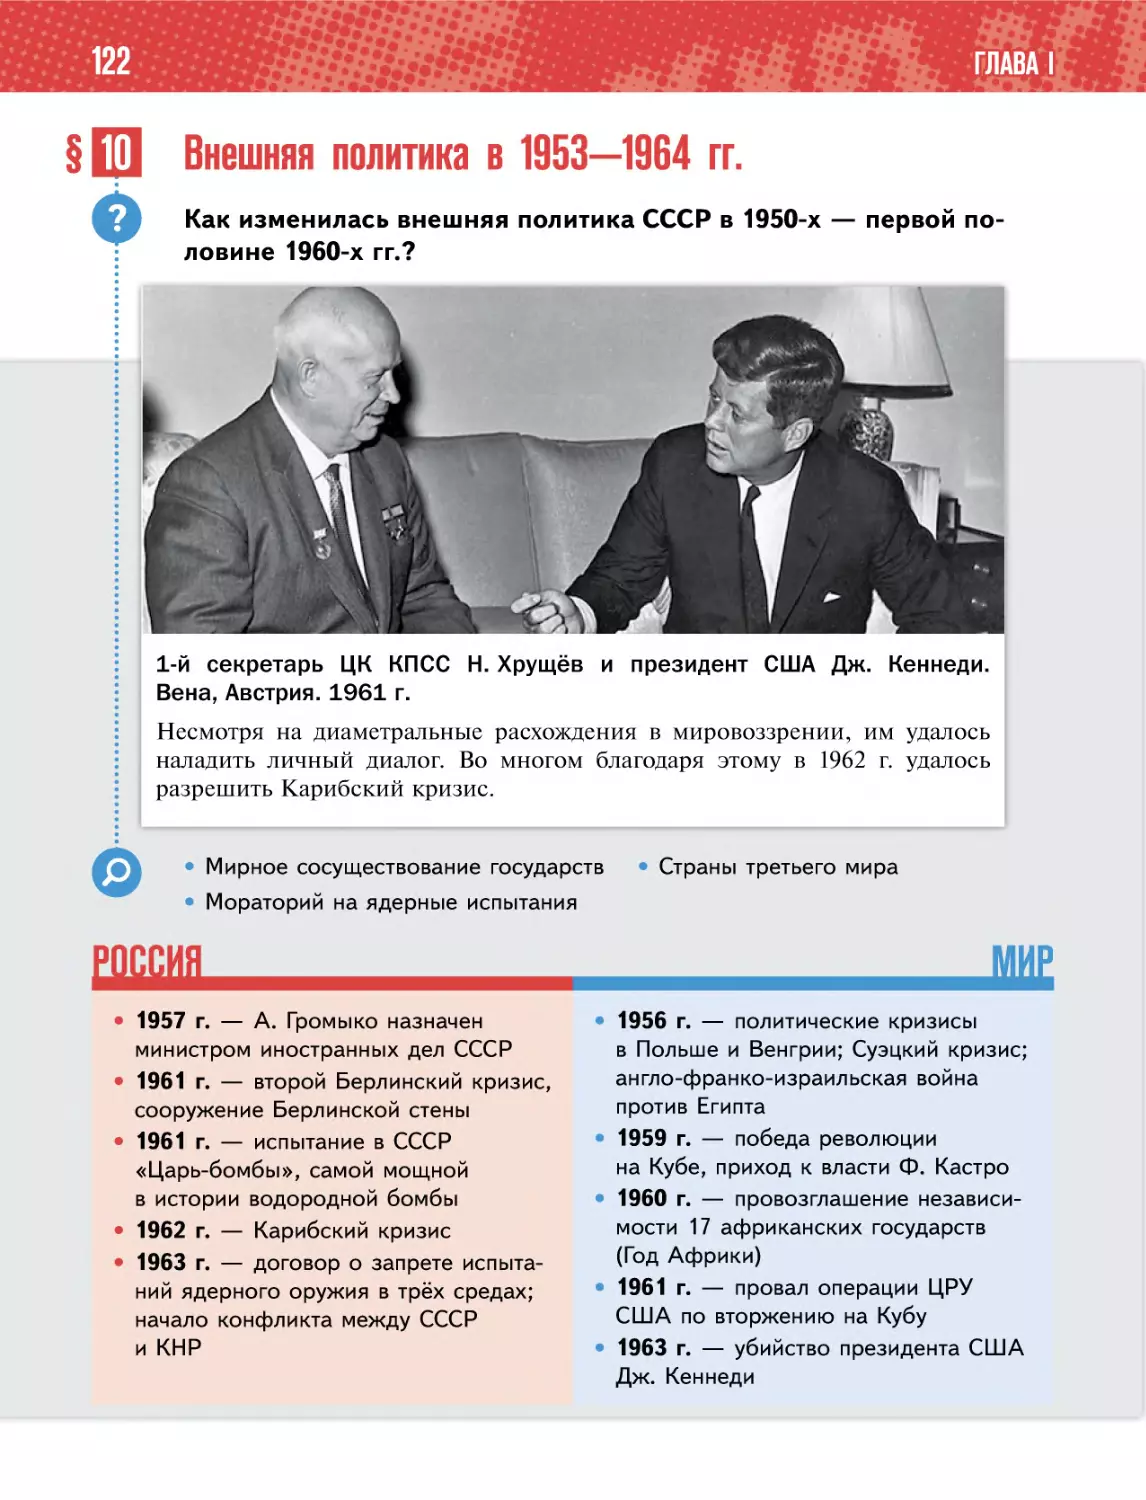 § 10 Внешняя политика в 1953—1964 гг.